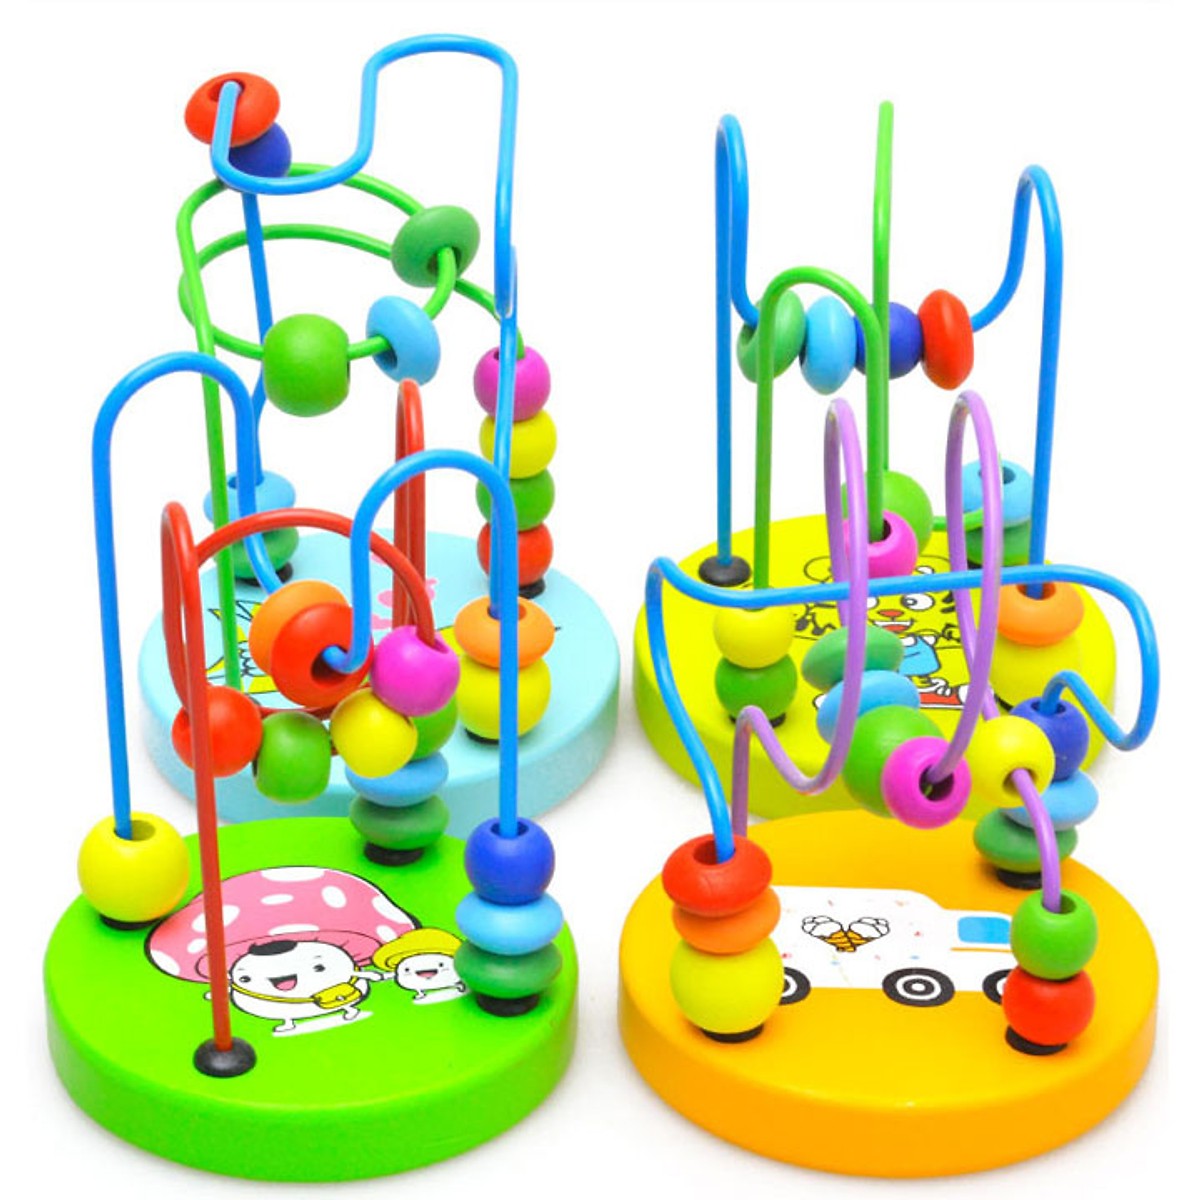 Combo 7 món đồ chơi SM (đàn gỗ, ong uốn dẻo, còi gỗ, luồn hạt, đồng hồ, tháp cầu vồng, trụ thả hình)